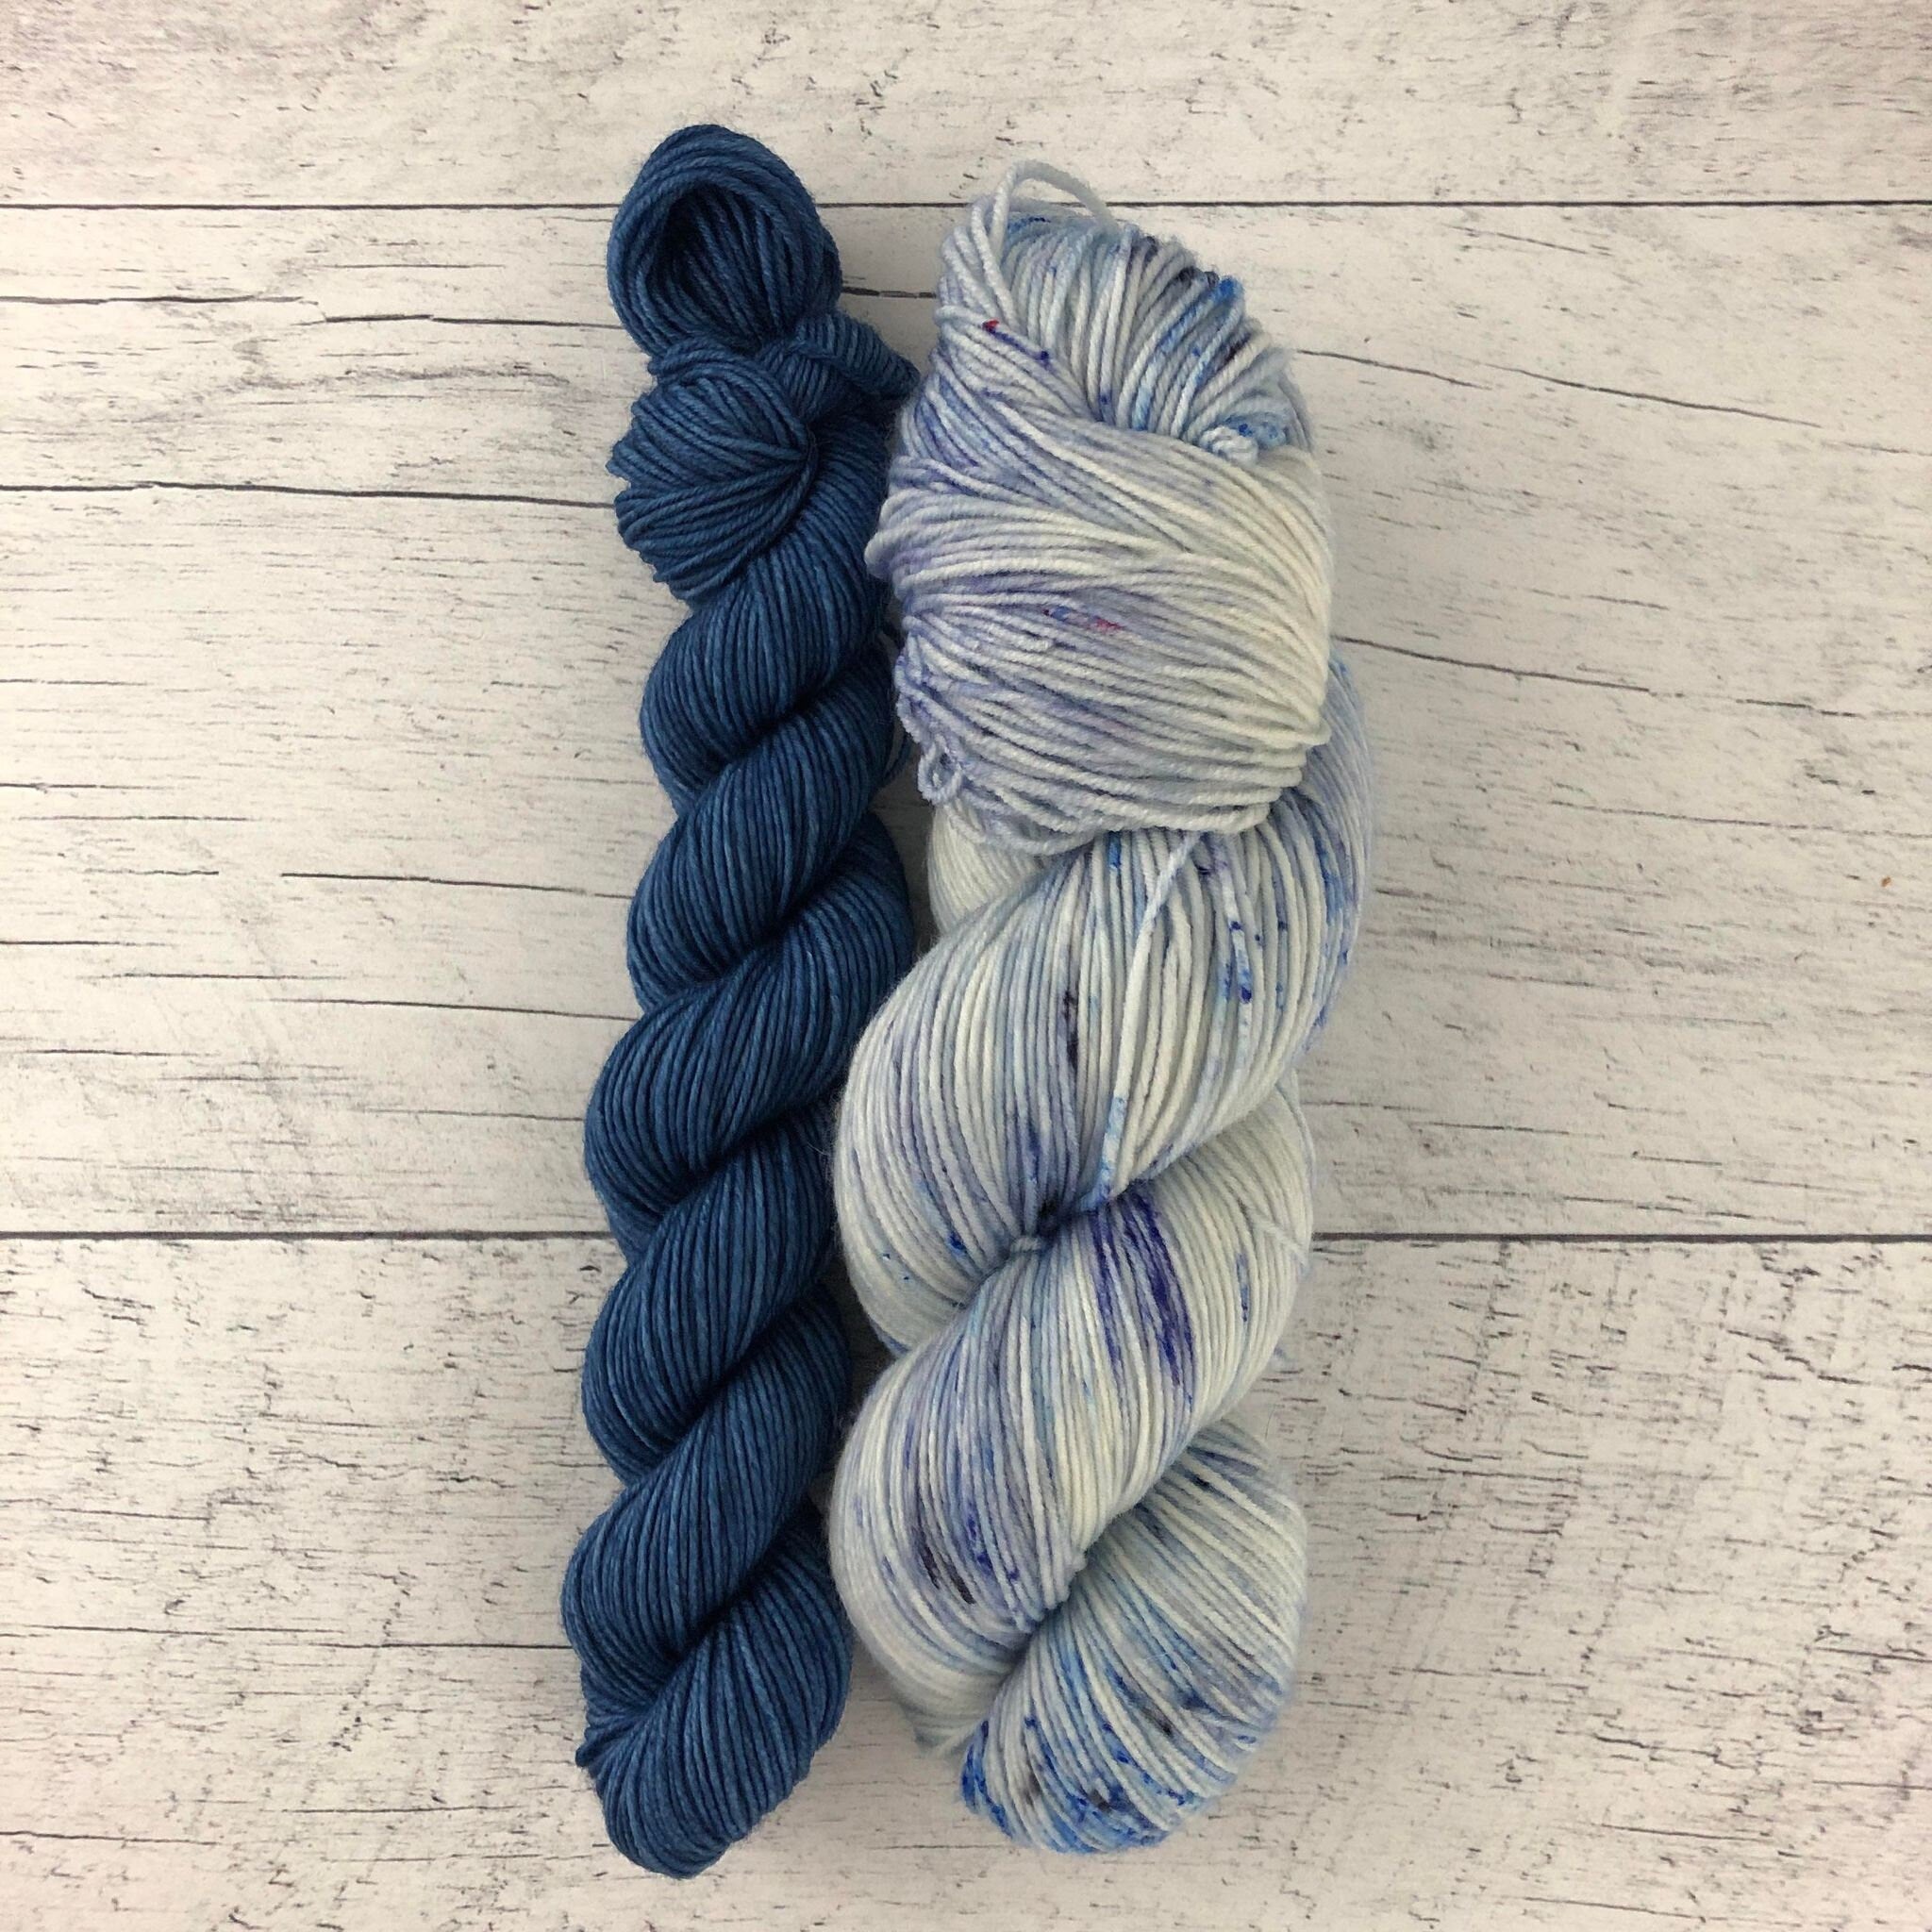 Blue Christmas (115g) + Bleu velours (35g) - Ensemble de laine pour bas superwash merino/nylon, prête à partir